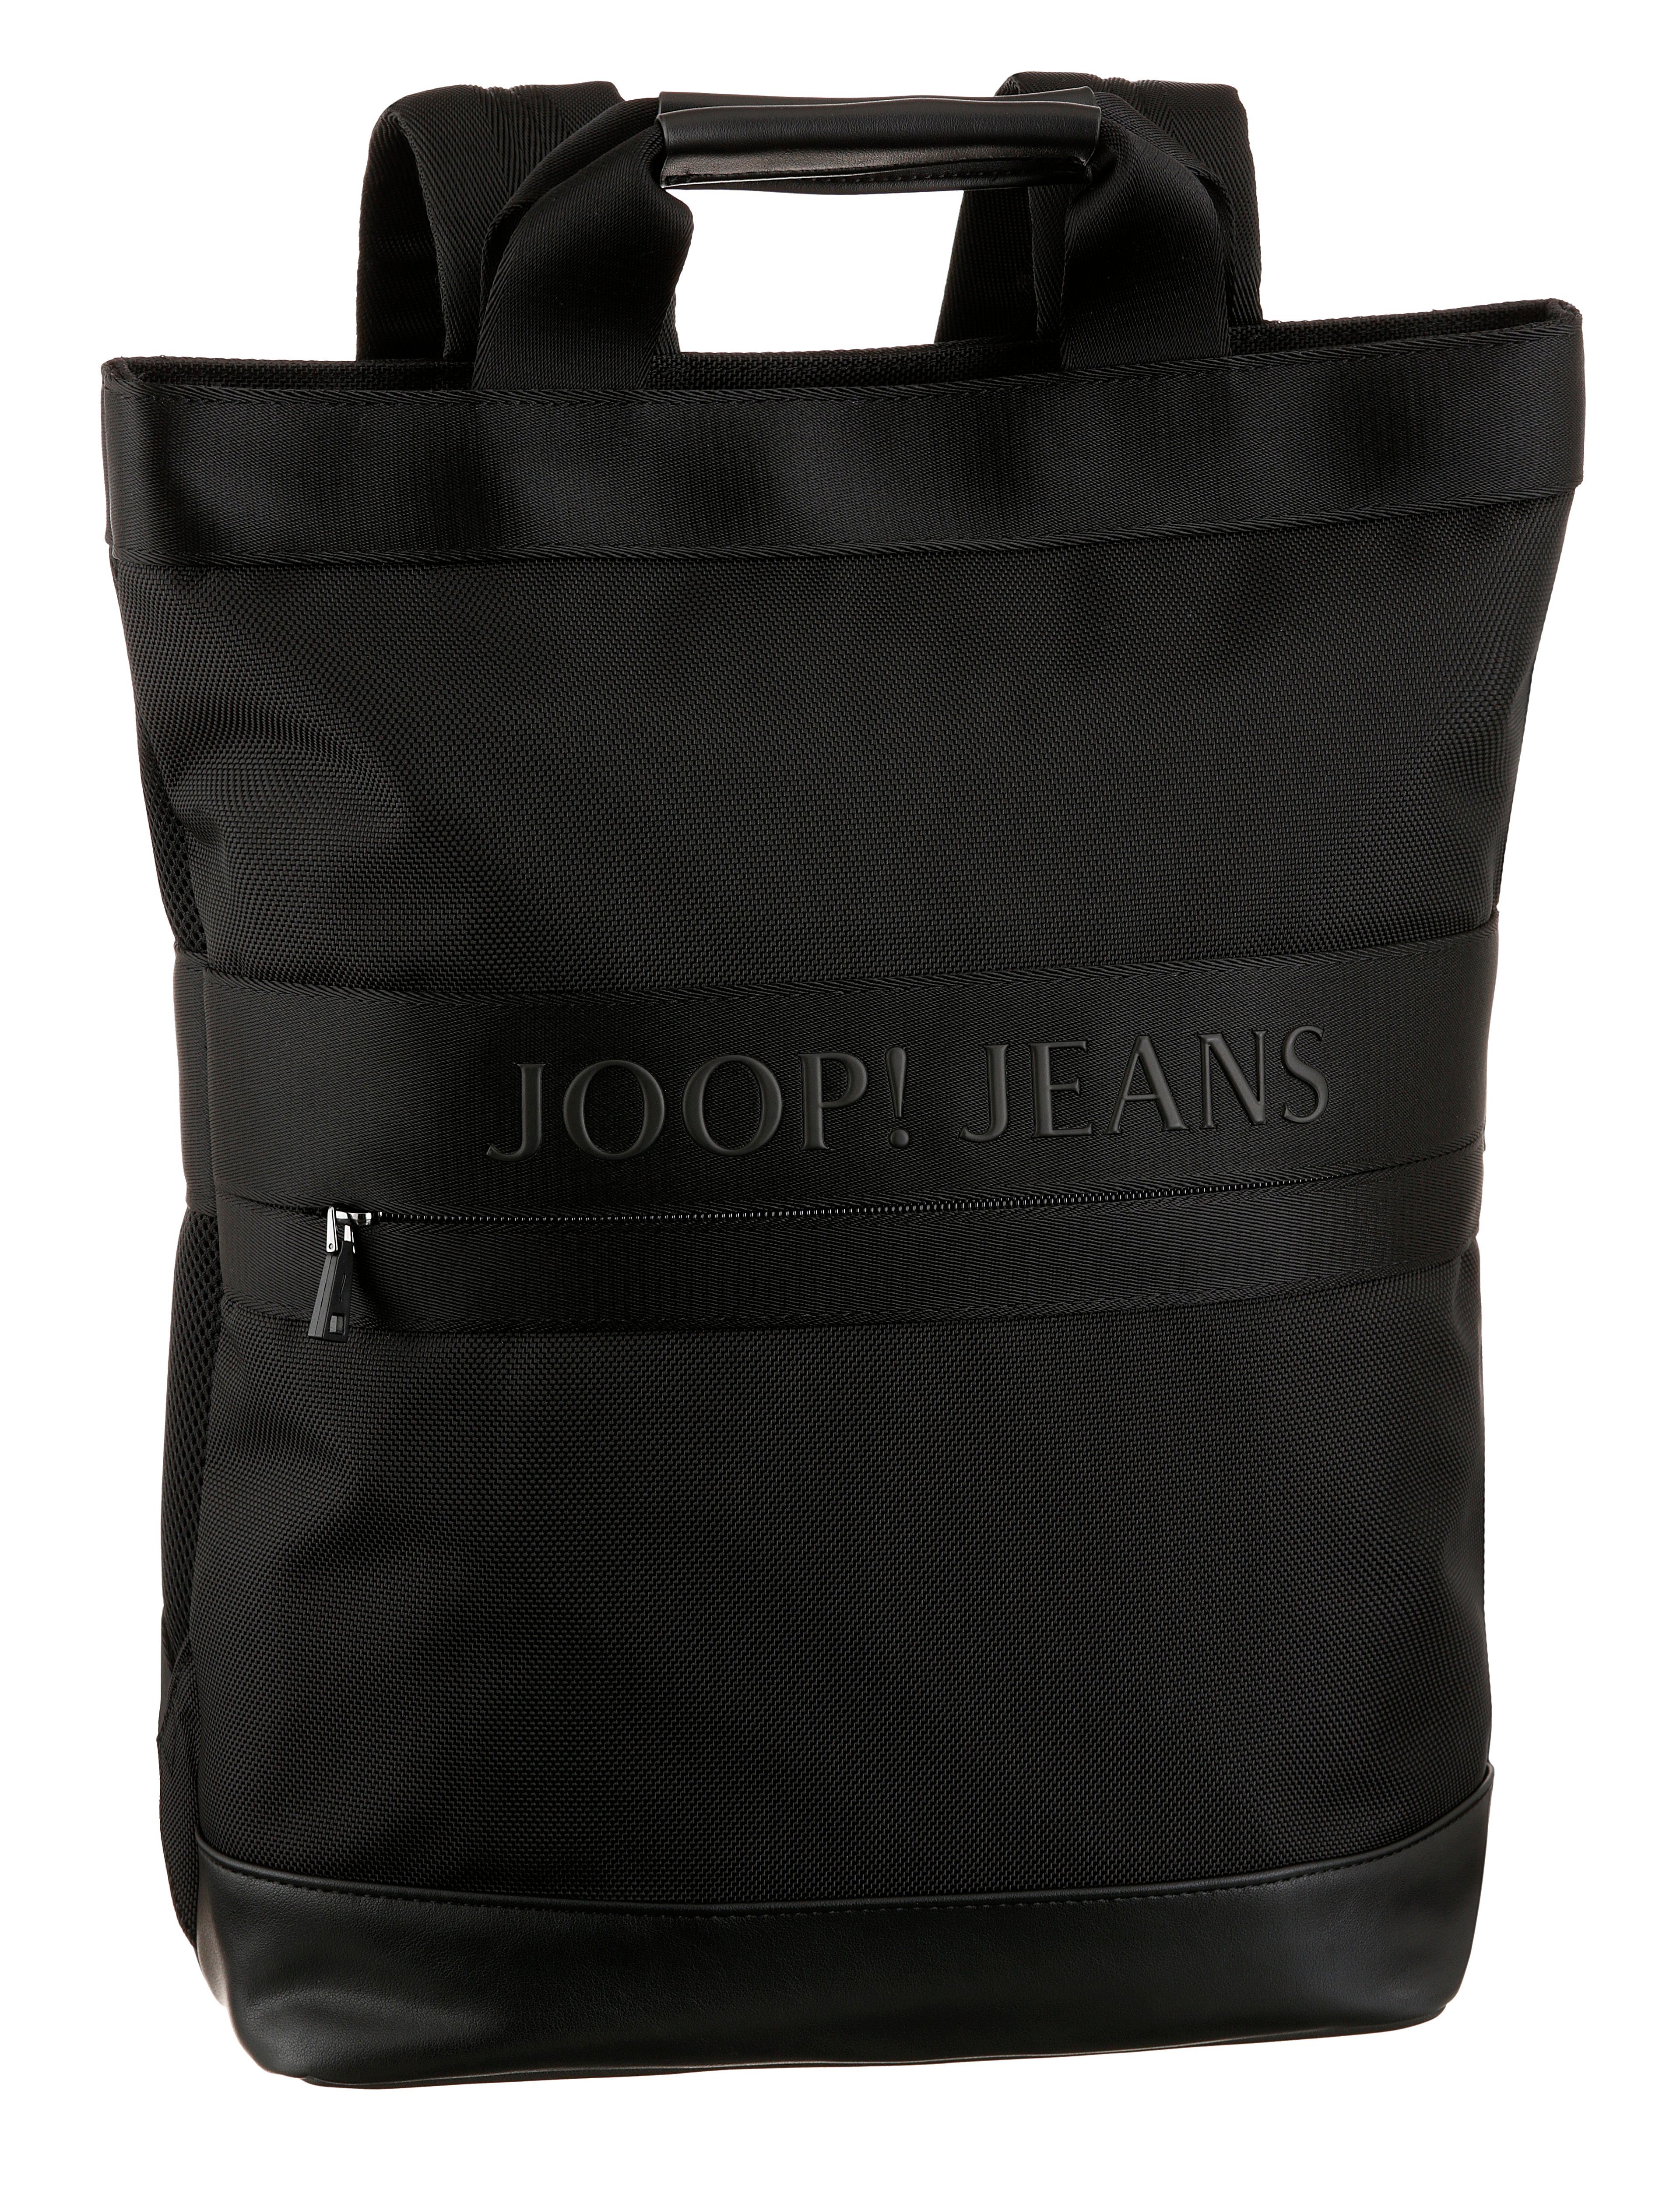 Joop Jeans backpack falk Reißverschluss-Vortasche svz, mit modica black Cityrucksack